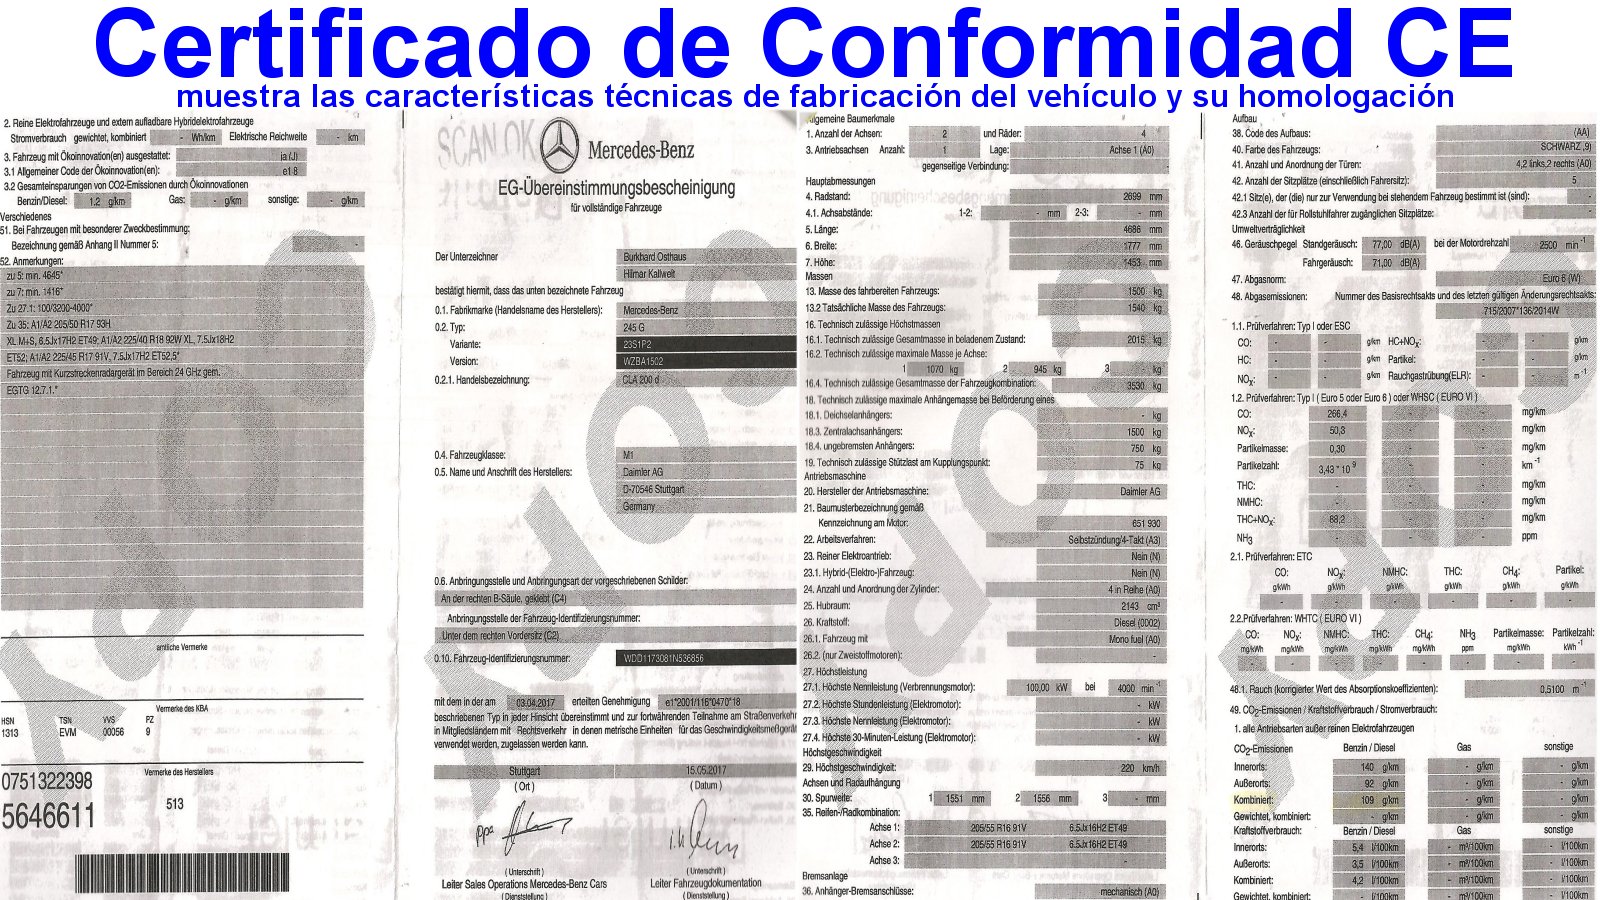 Certificado conformidad CE